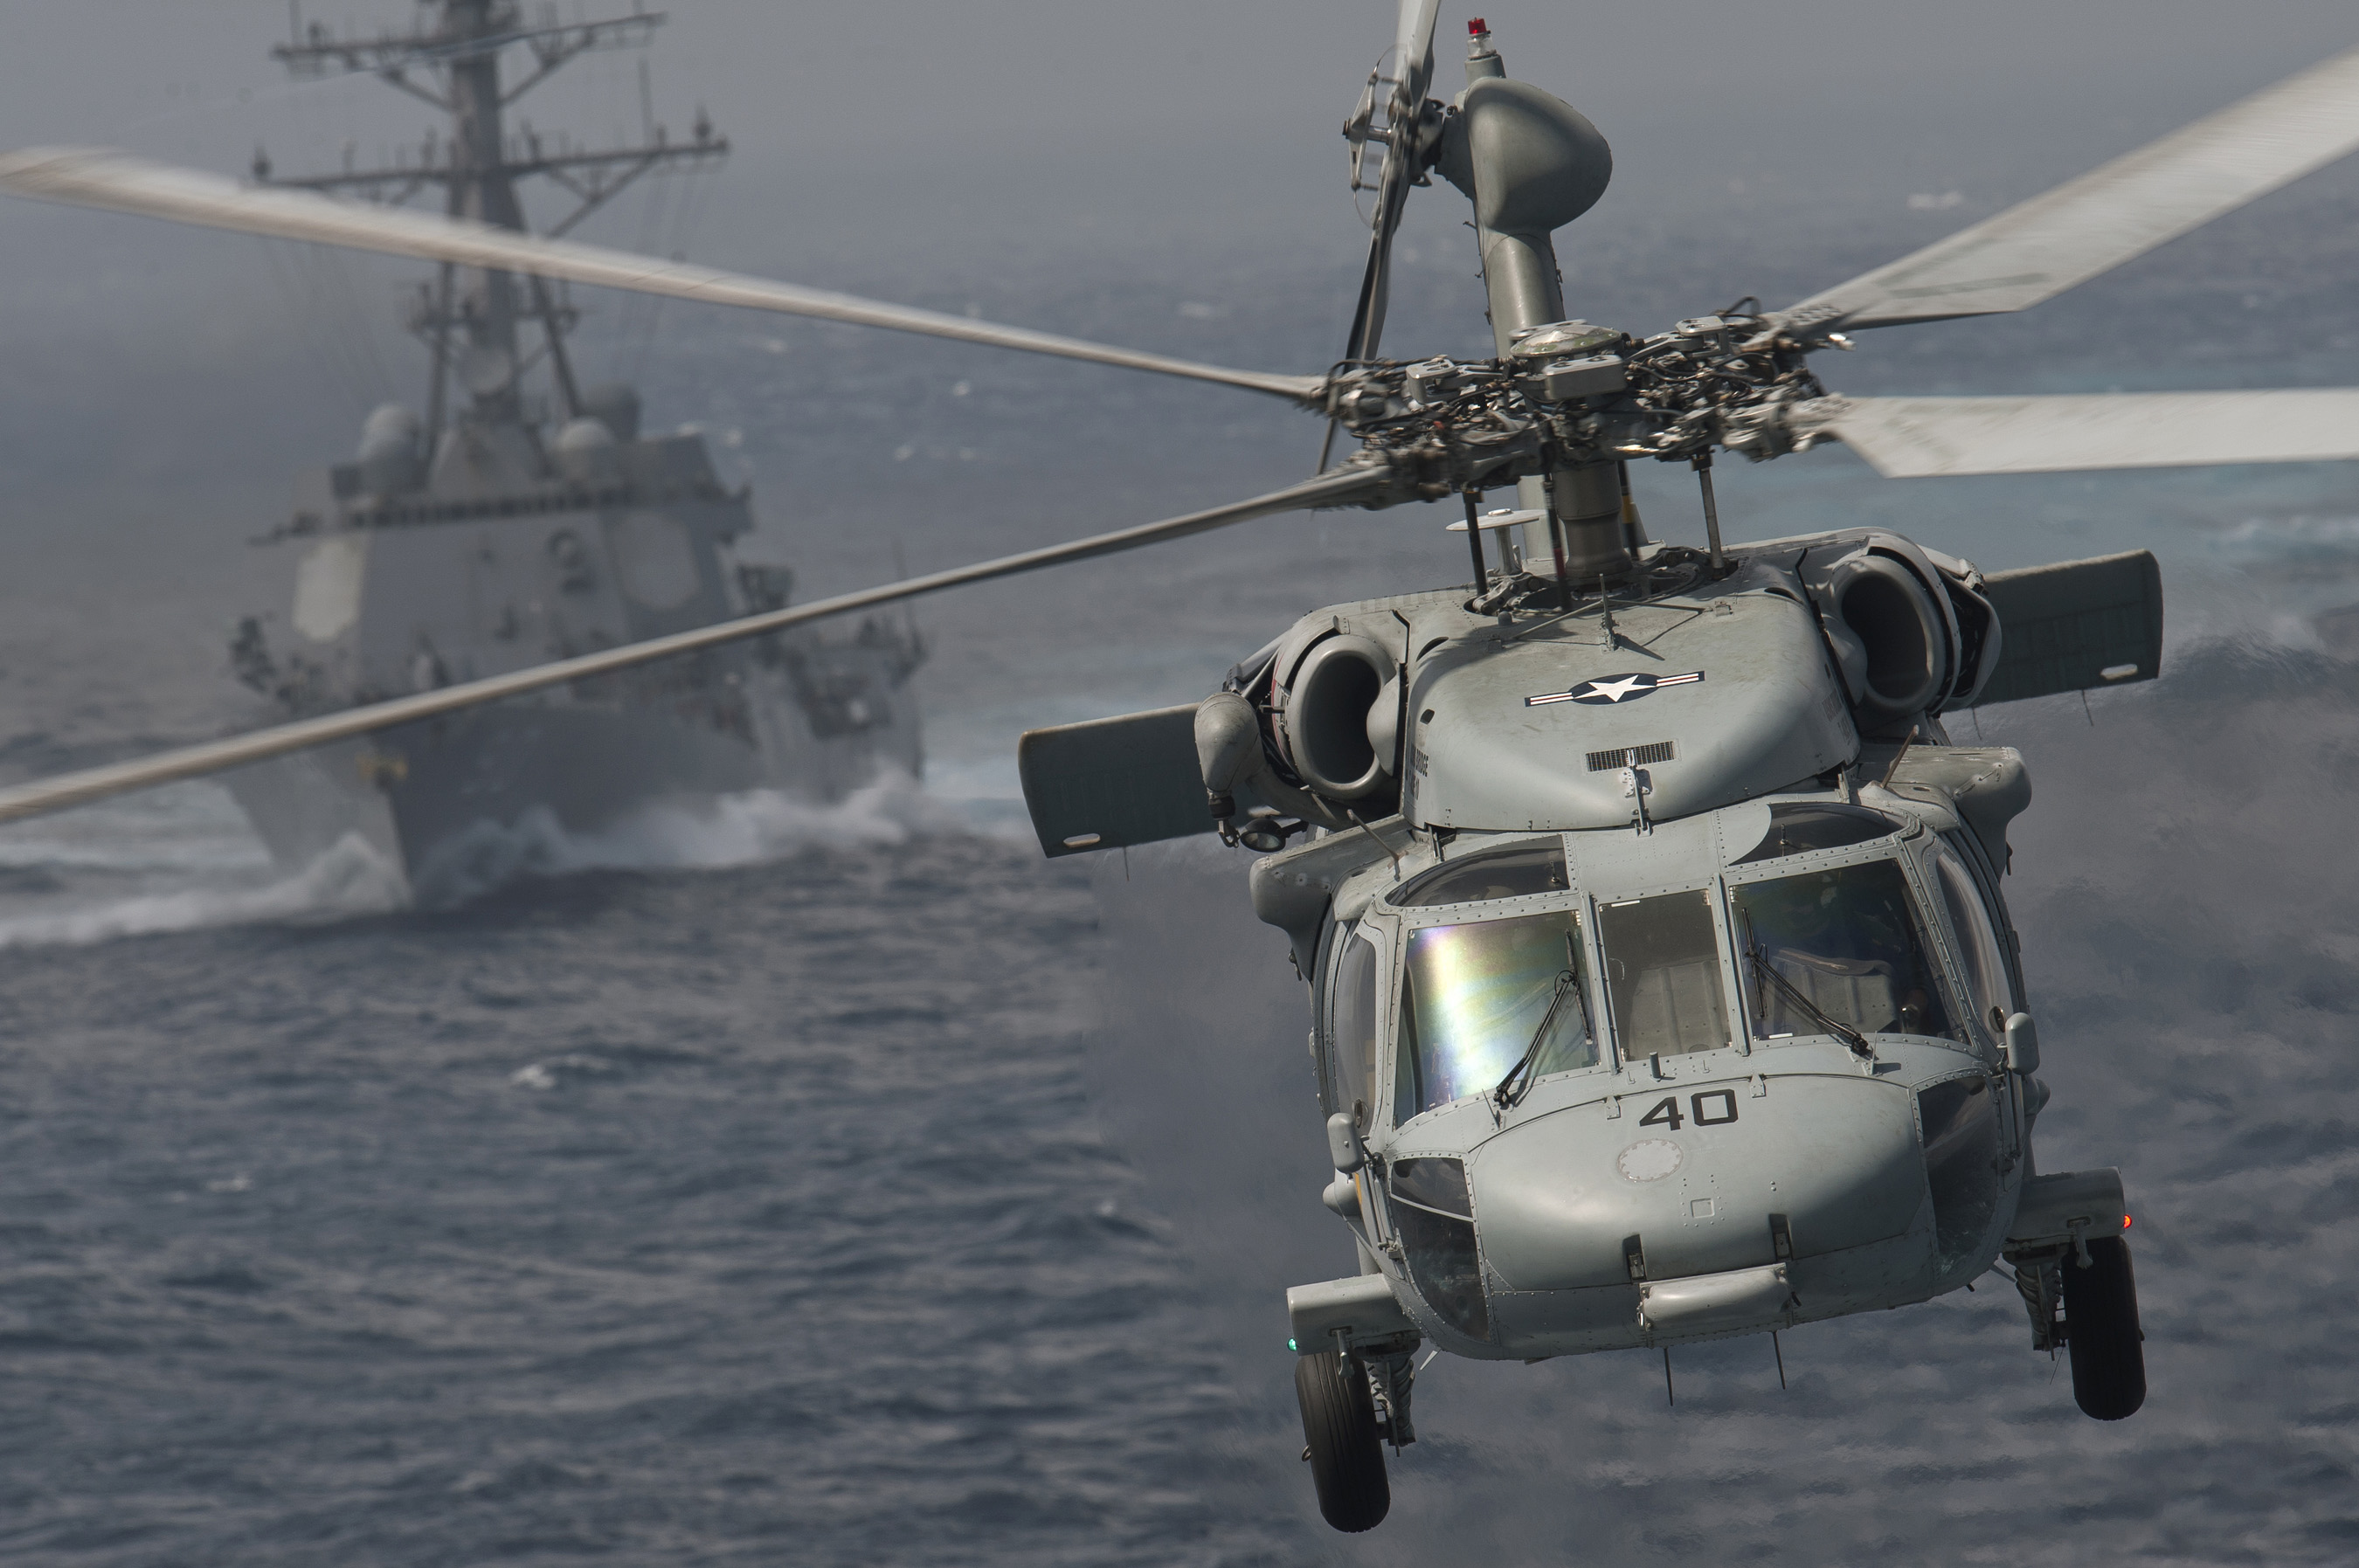 Kontrakt o wartości 1 200 000 000 dolarów: Norwegia kupuje amerykańskie śmigłowce Sikorsky SH-60 Seahawk, które zastąpią NH90